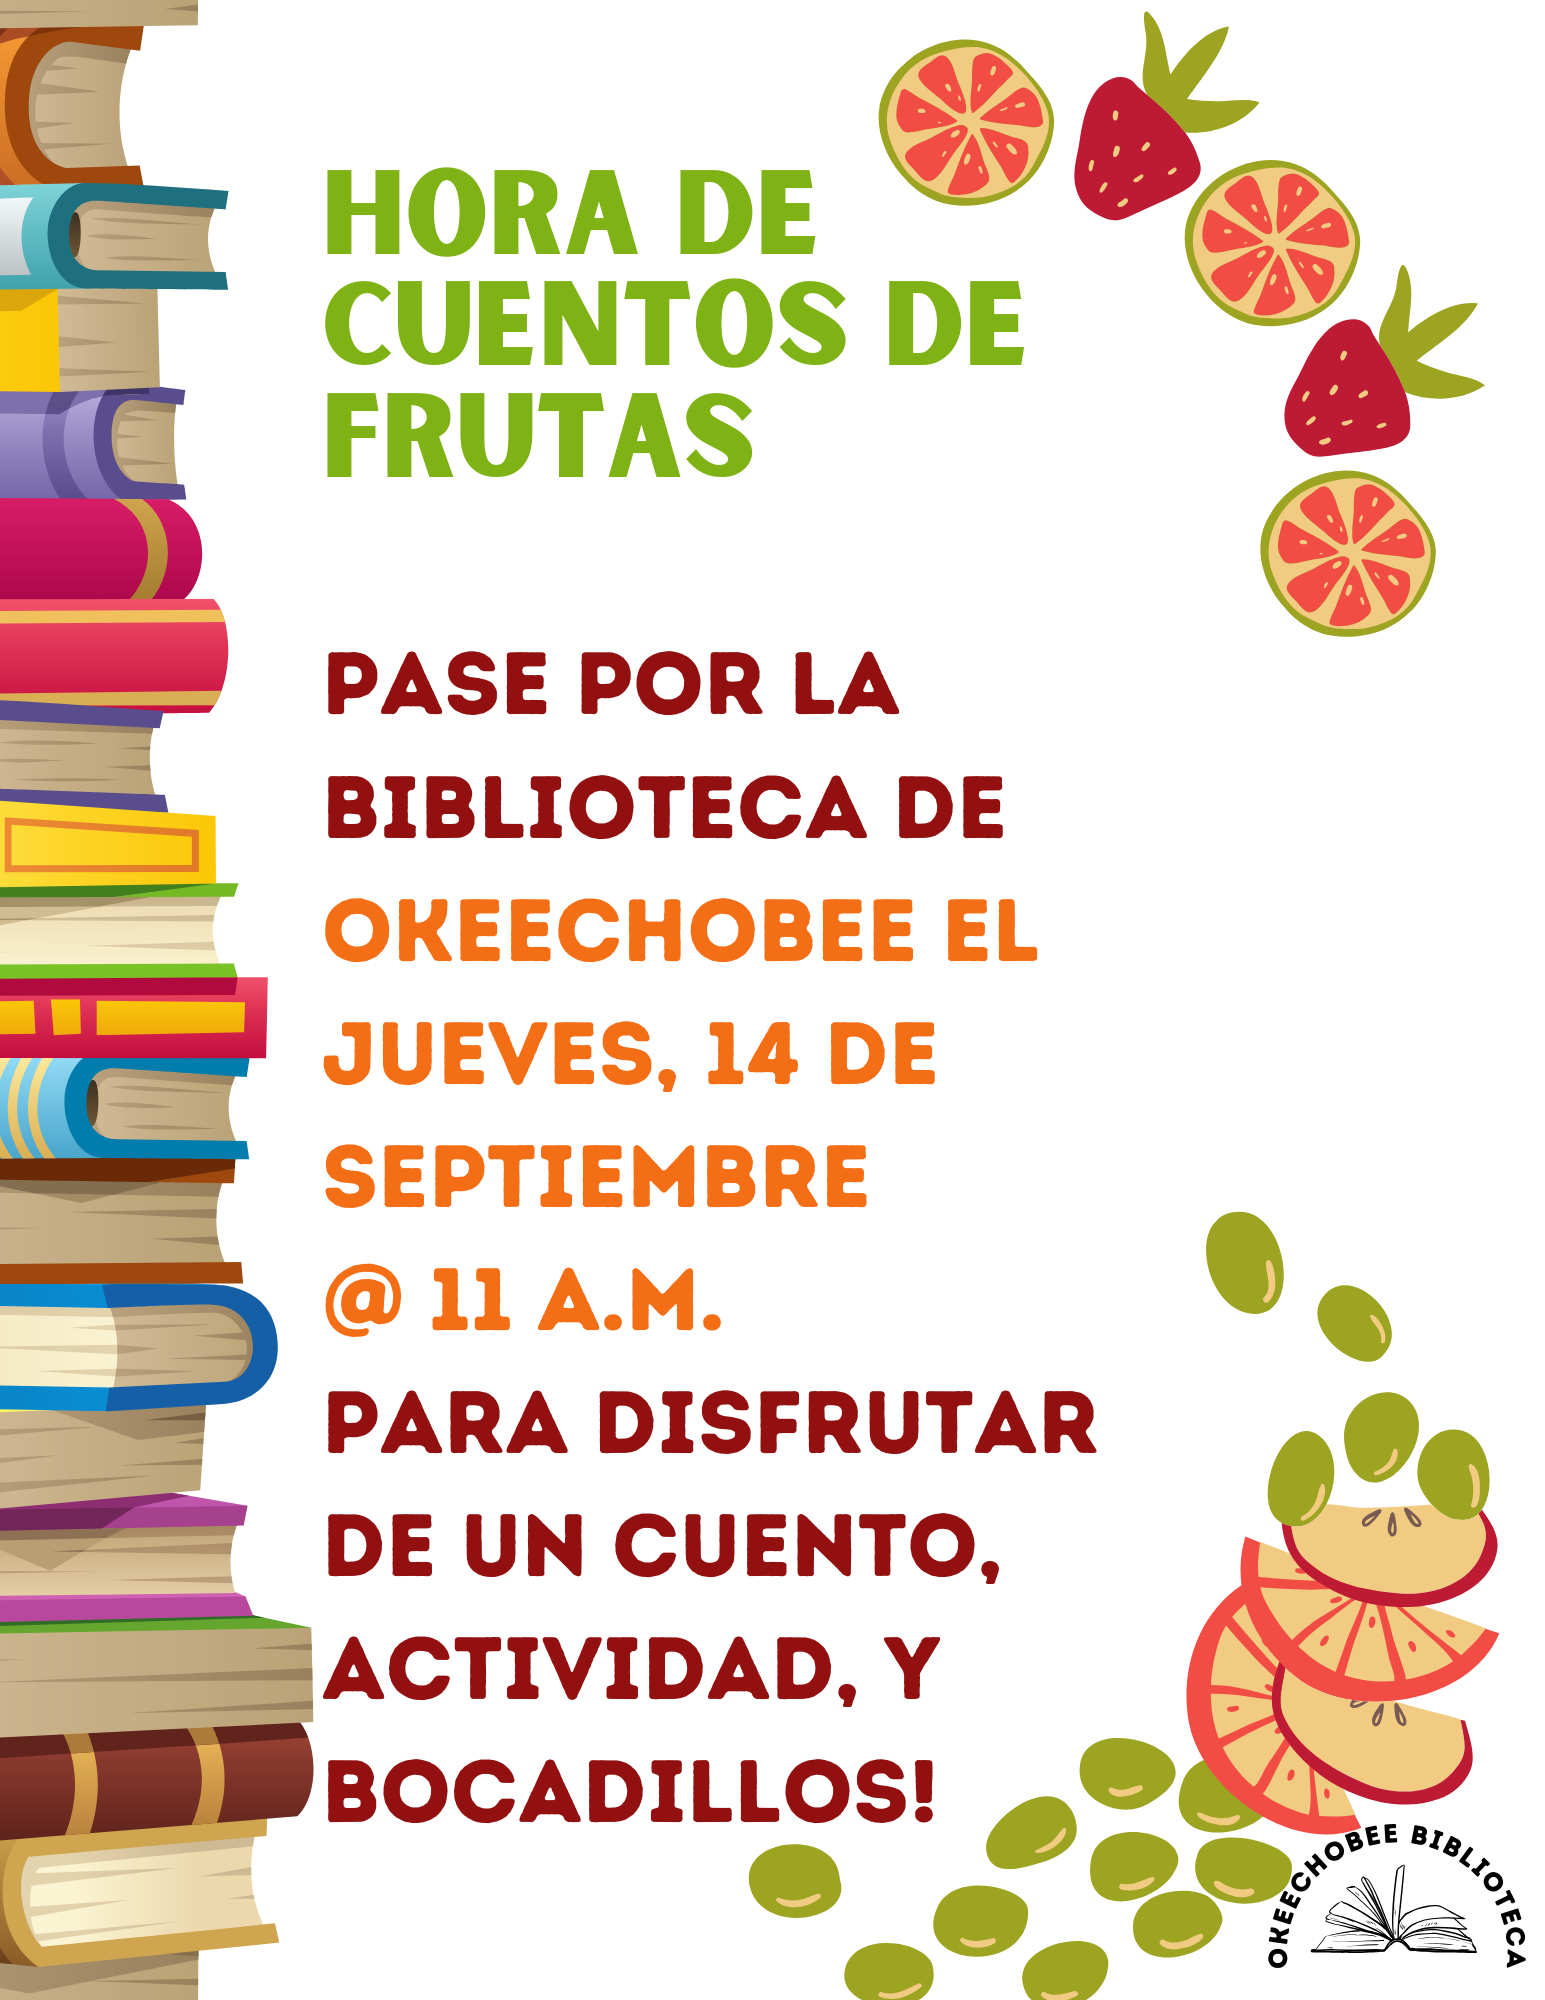 Pase por la Biblioteca de Okeechobee el Jueves, 14 de Septiembre, a las 11 A.M. para nuestra Hora de Cuentos de Frutas. Venga y disfruta de un cuento, actividad, y bocadillos!